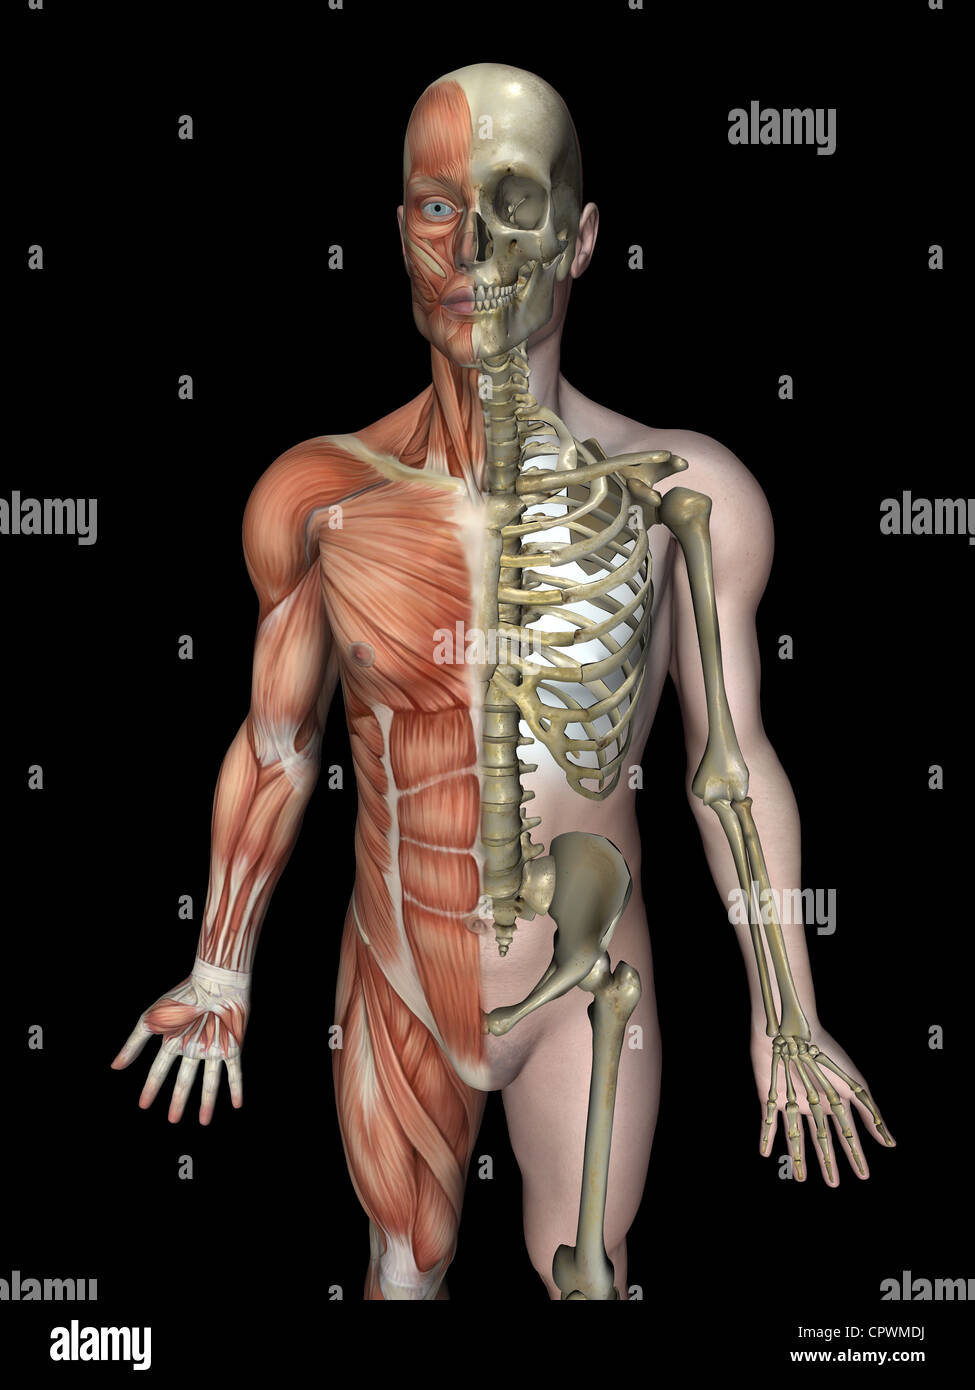 Illustration anatomique du corps humain montrant le squelette et la musculature Banque D'Images